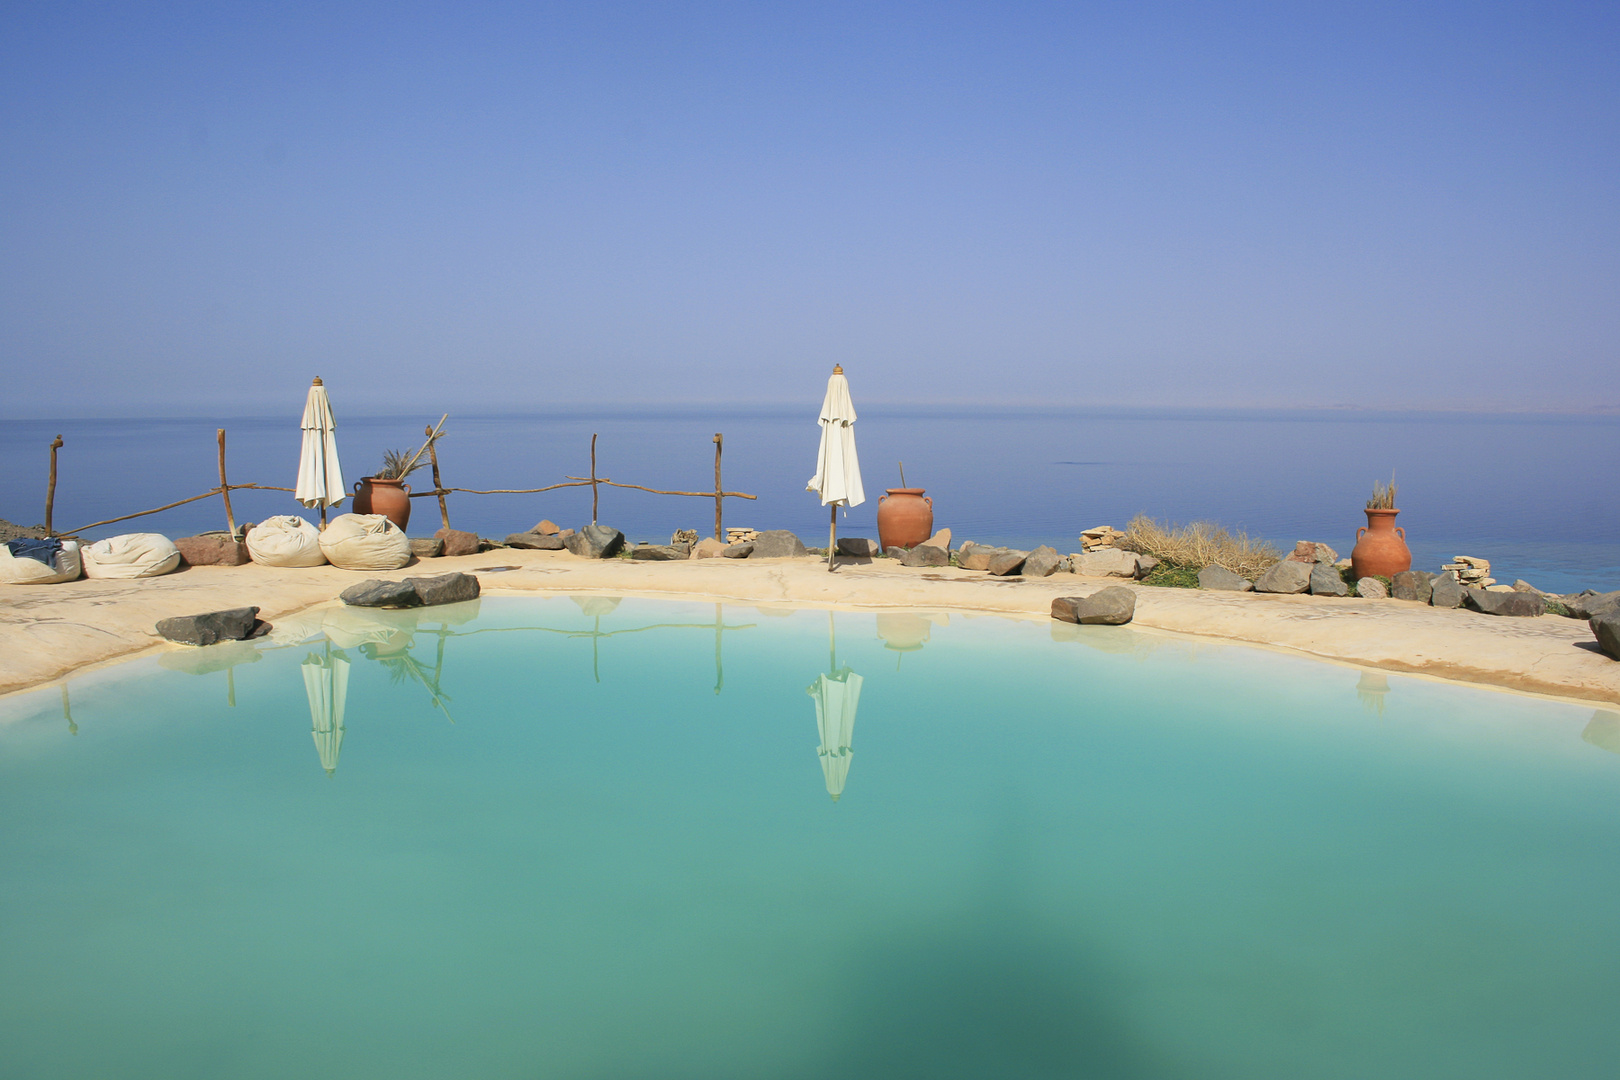 Oasis de paz al borde del mar rojo, Egipto